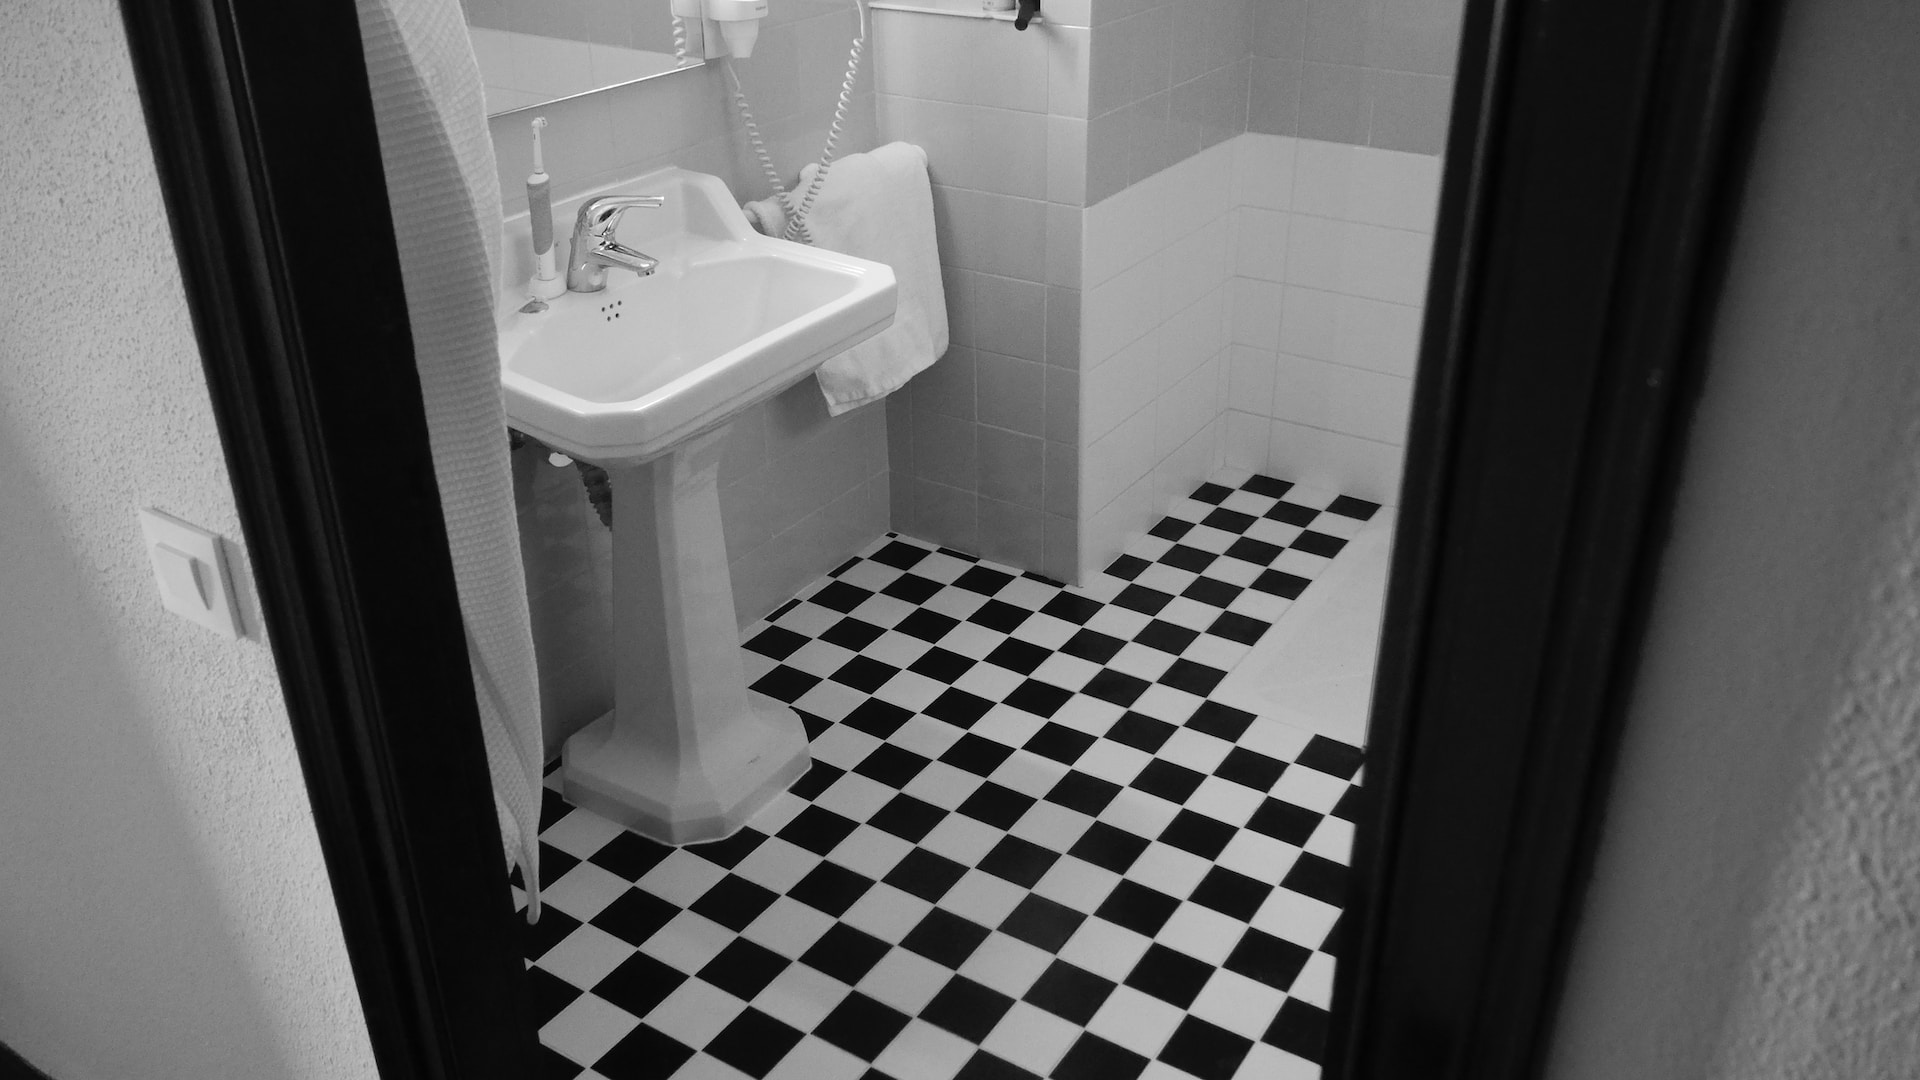 Merész és gyönyörű: Fekete-fehér fürdőszoba tervezési tippek az időtlen vonzerőért